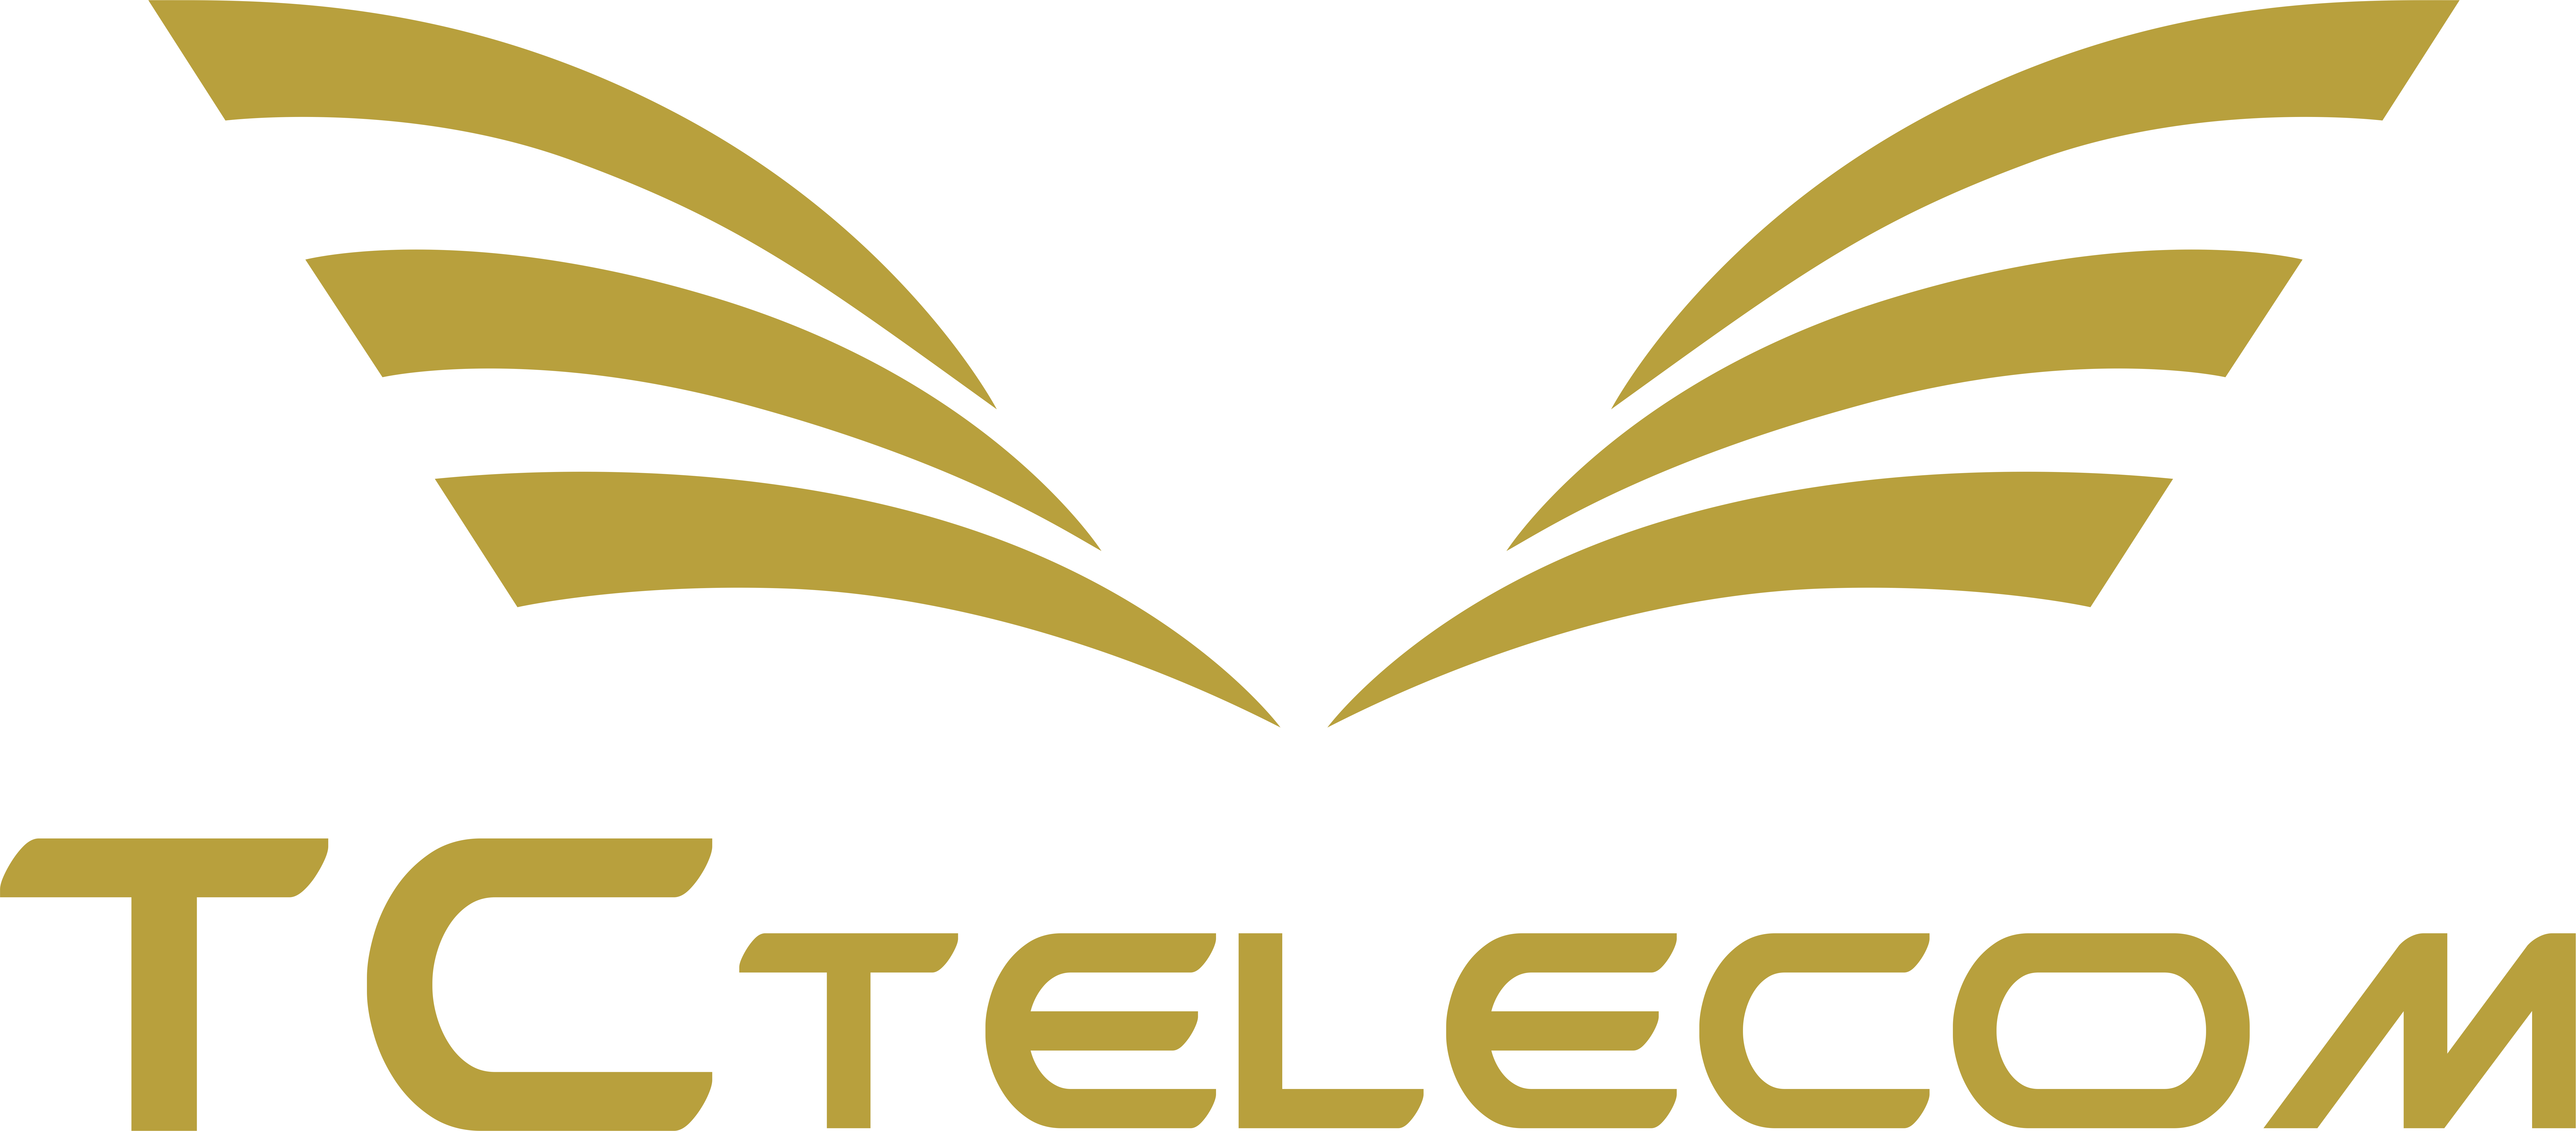 TCTelecom